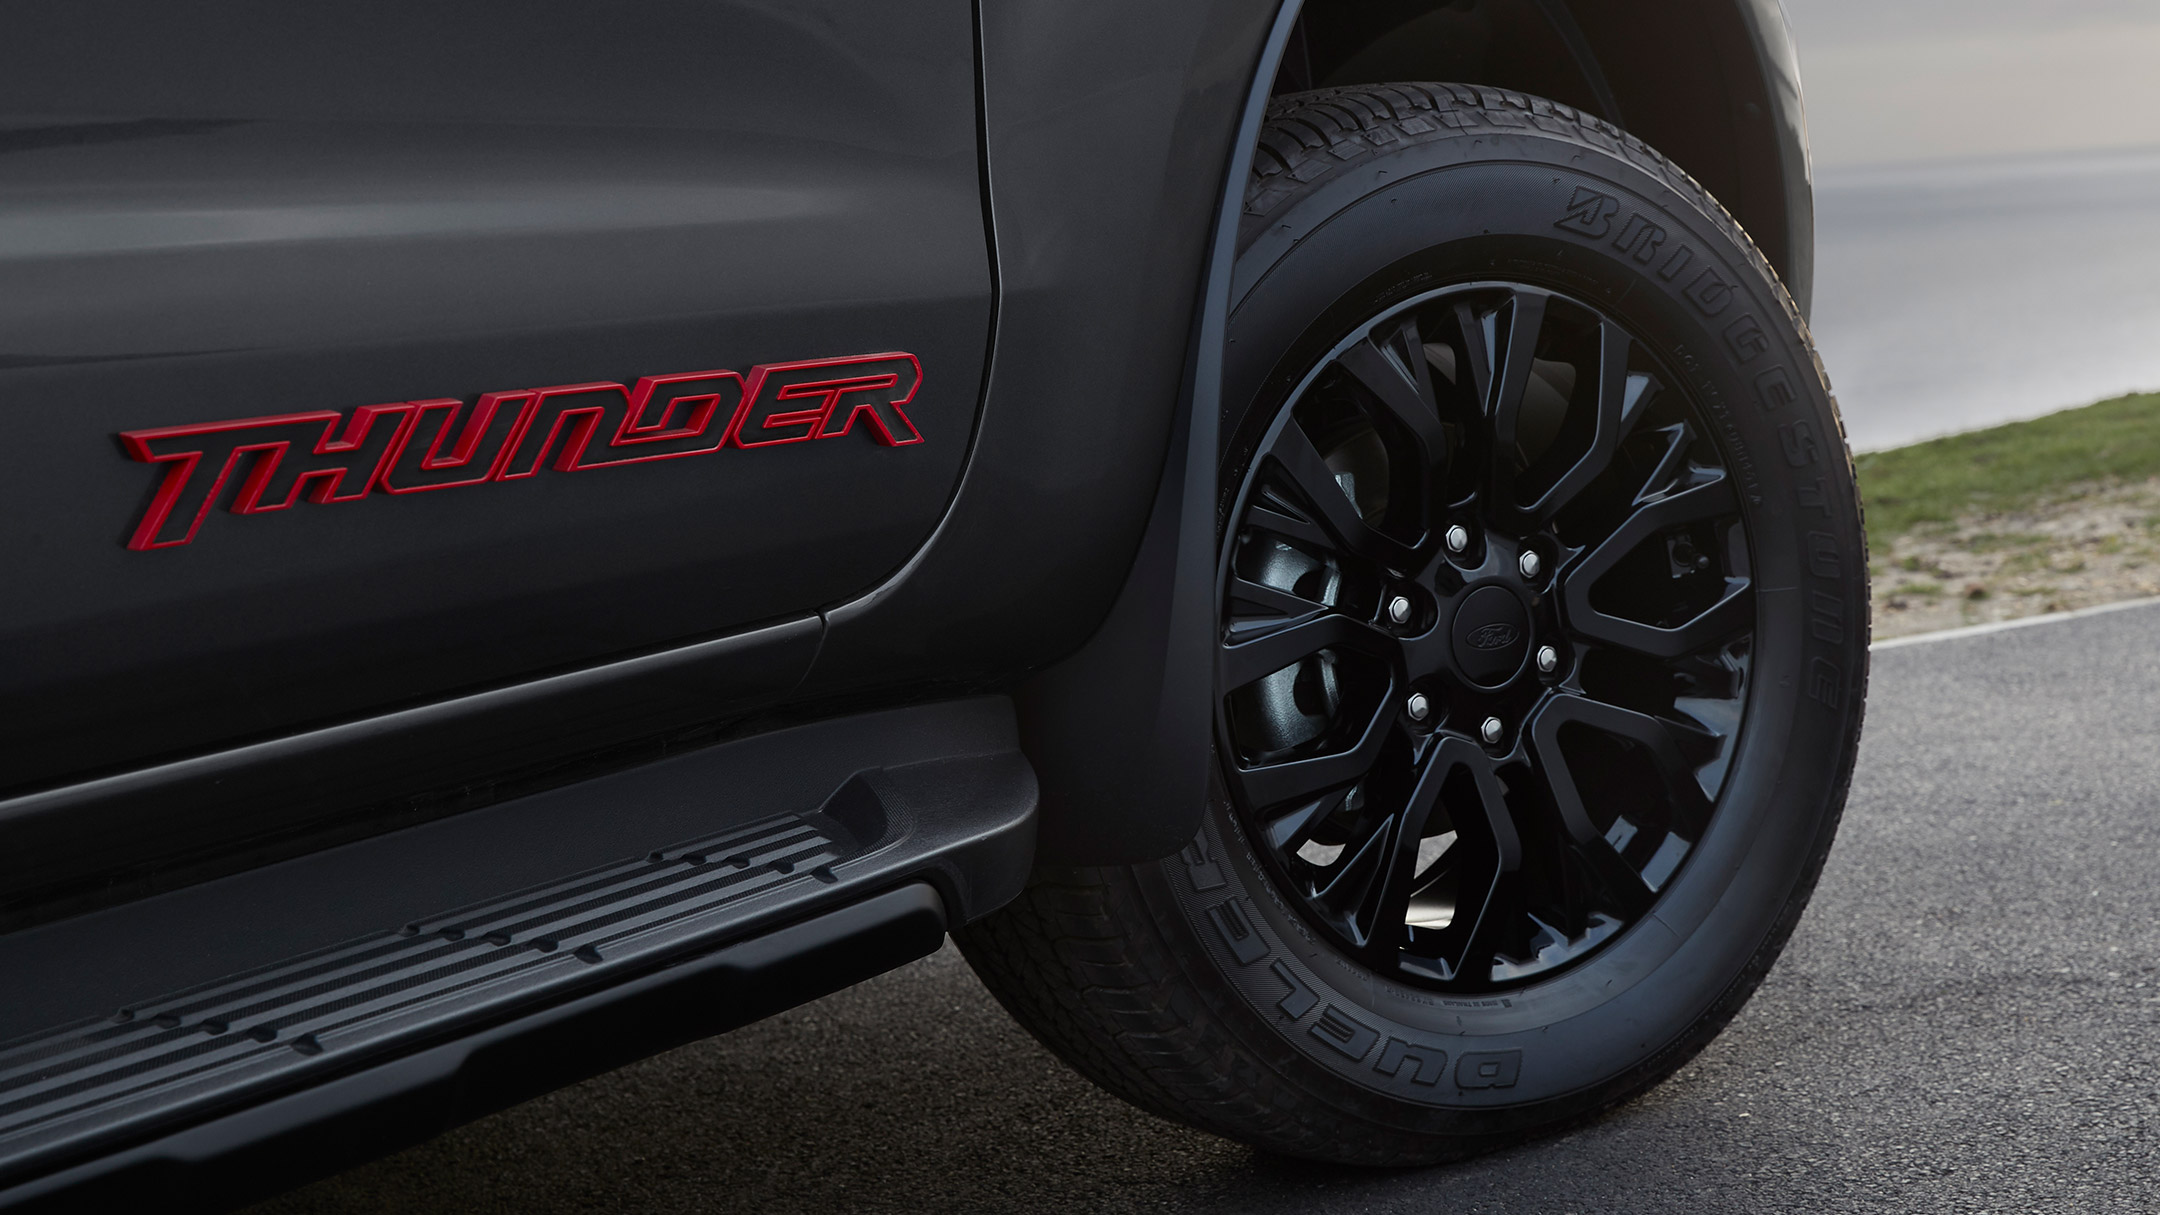 Prim-plan logo Ford Ranger Thunder